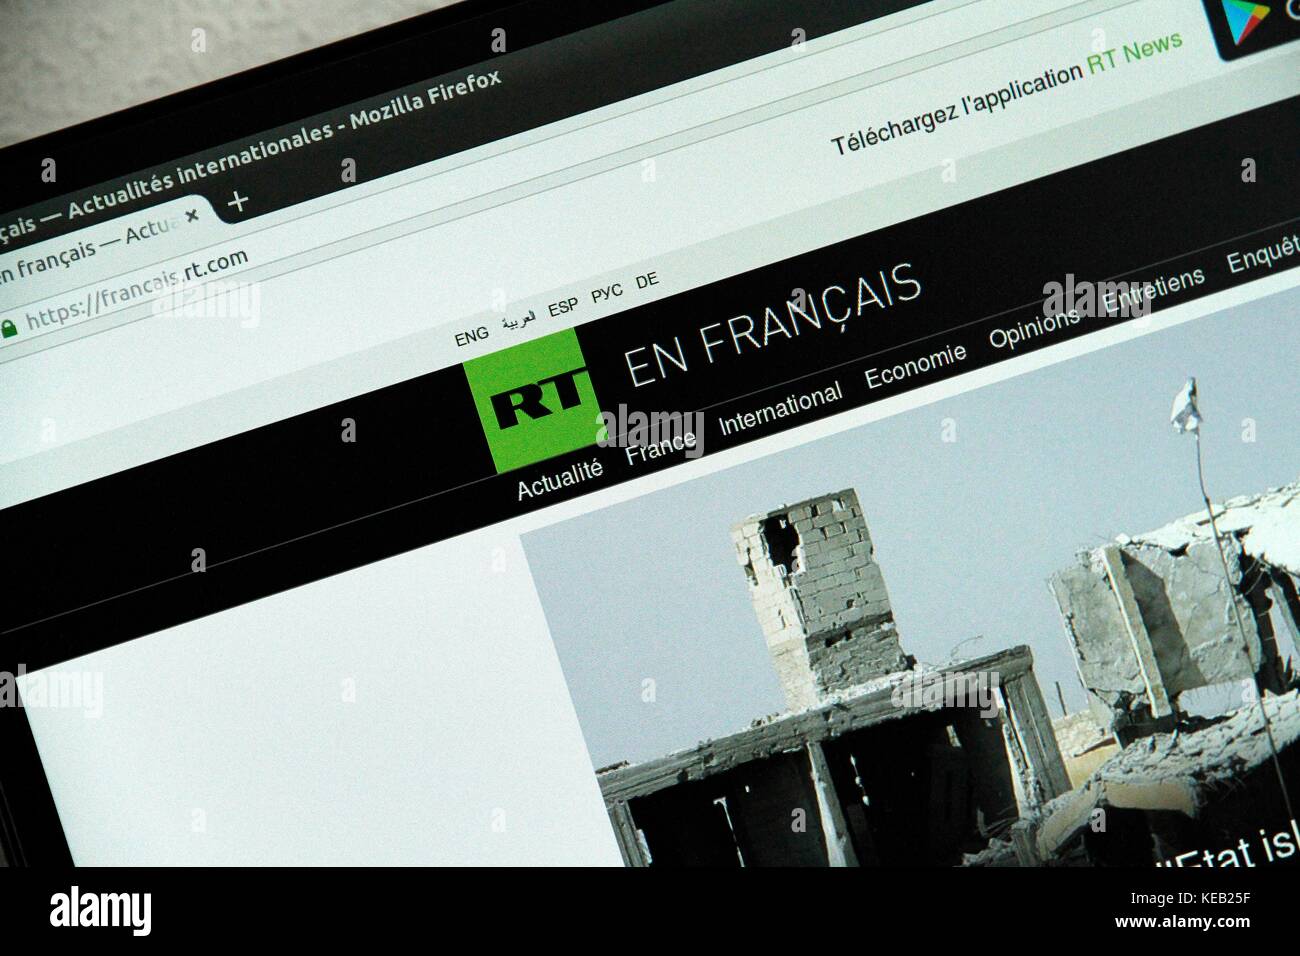 Sito media la Russia di oggi (RT). La Russia oggi news canale arriva in Francia. Il lancio è previsto per il mese di dicembre. Foto Stock